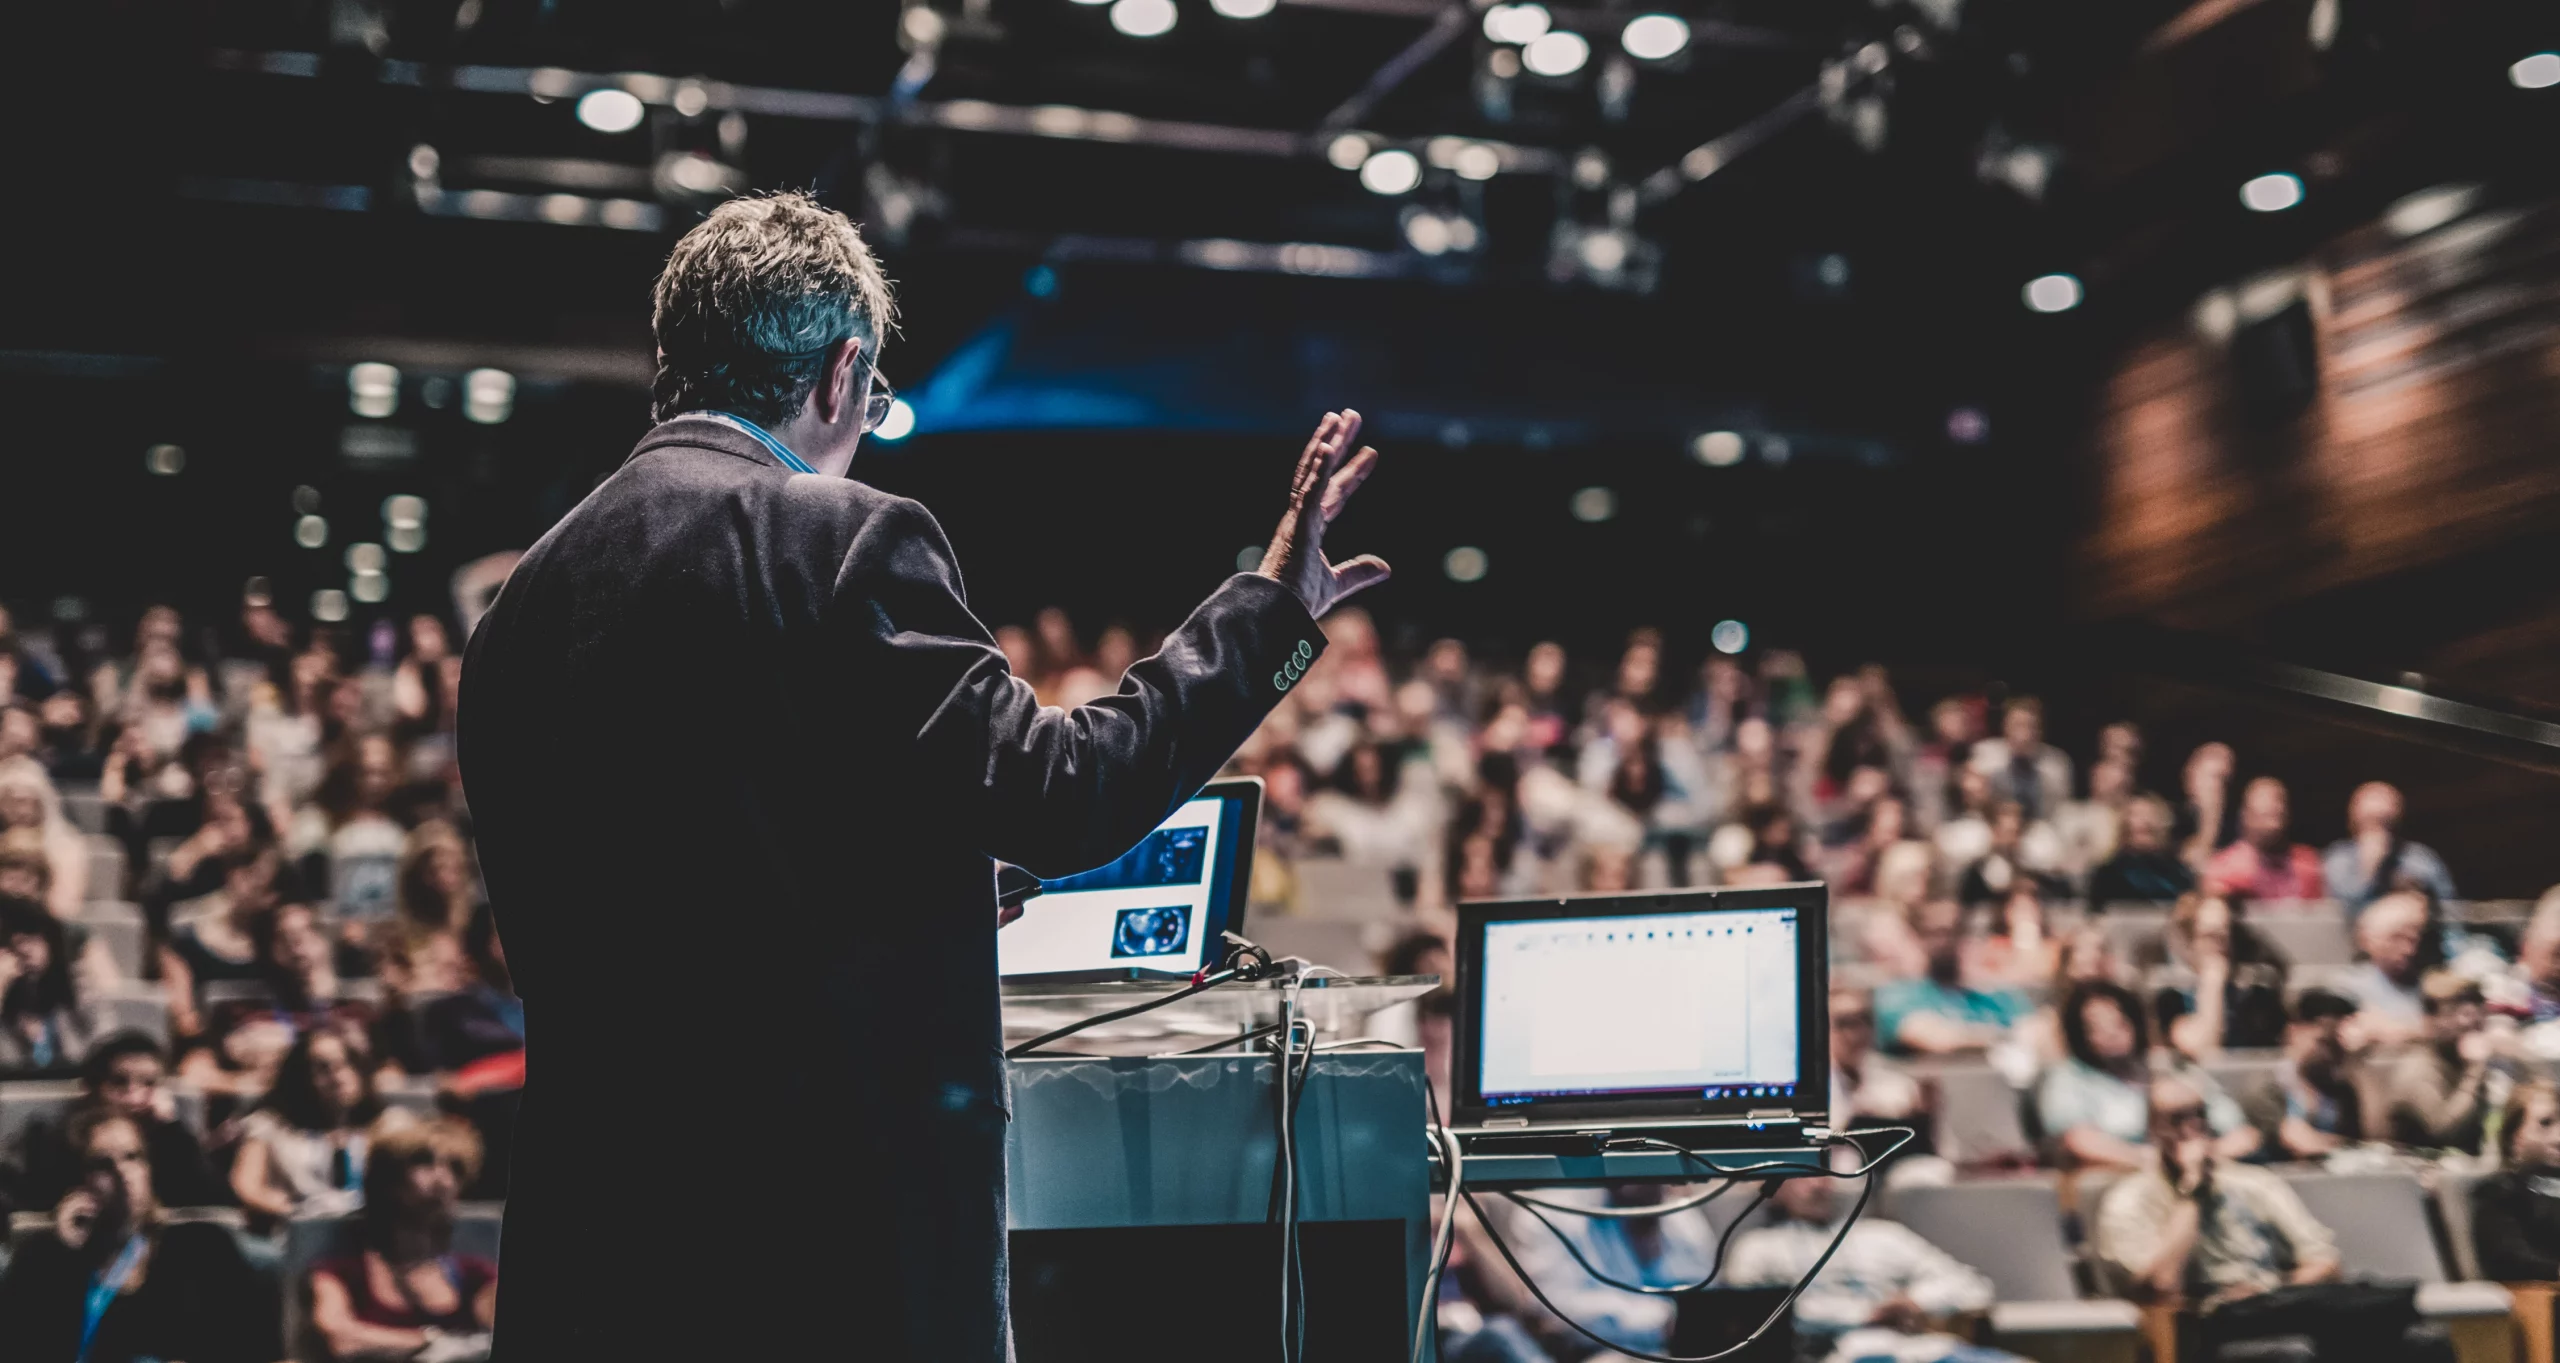 Das Bild zeigt einen Sprecher, der vor einem Laptop auf einem Podium steht und eine Präsentation hält. Er spricht zu einem Publikum in einem großen Hörsaal, das unscharf im Hintergrund zu sehen ist.